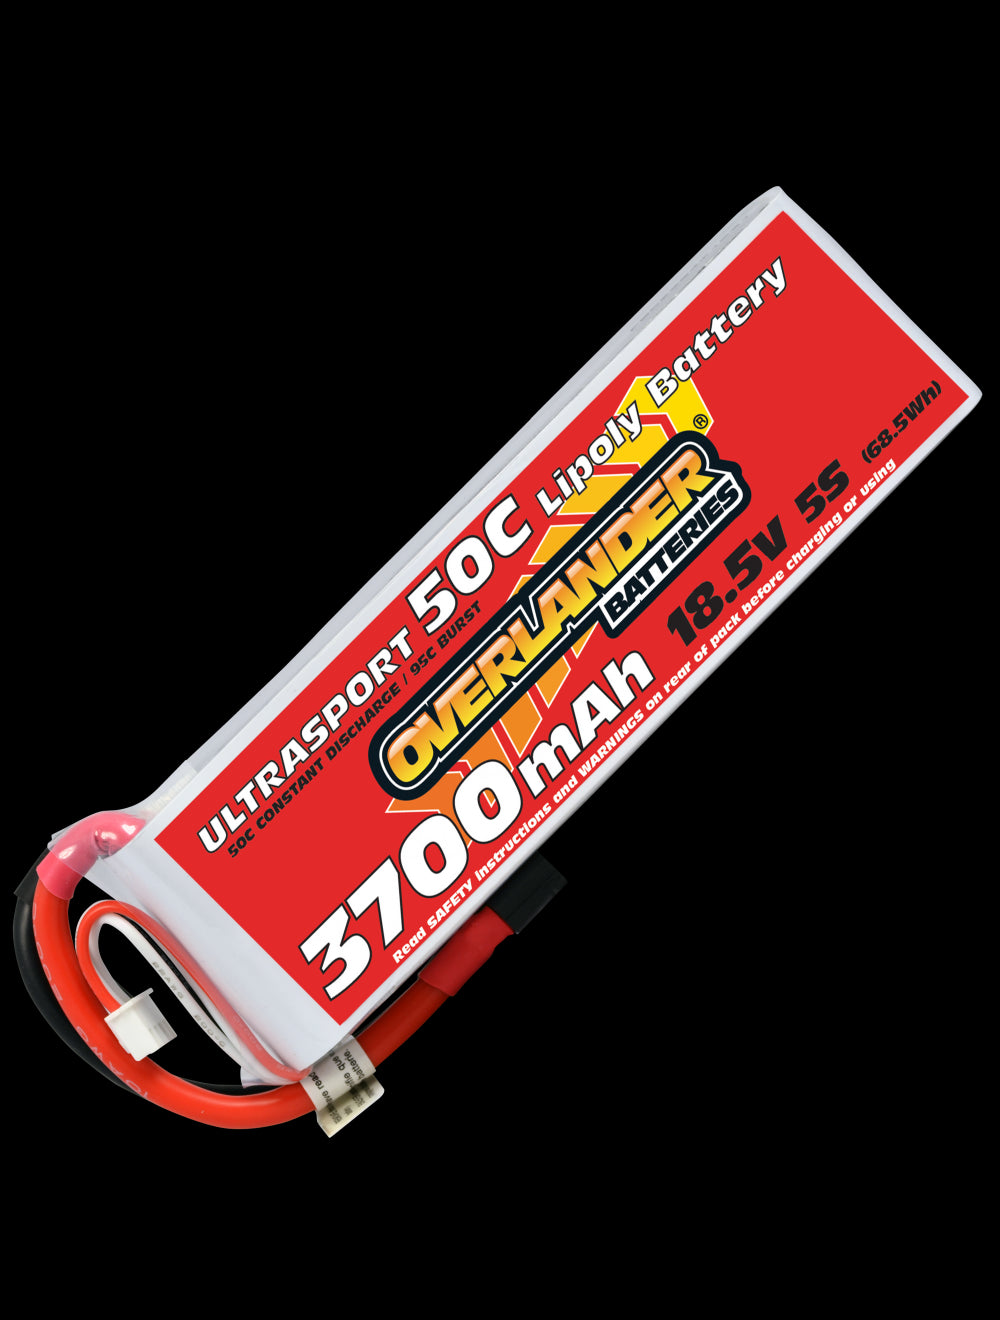 Overlander 3700mAh 18.5V 5S 50C Ultrasport LiPo Battery - XT60 Connector 3225